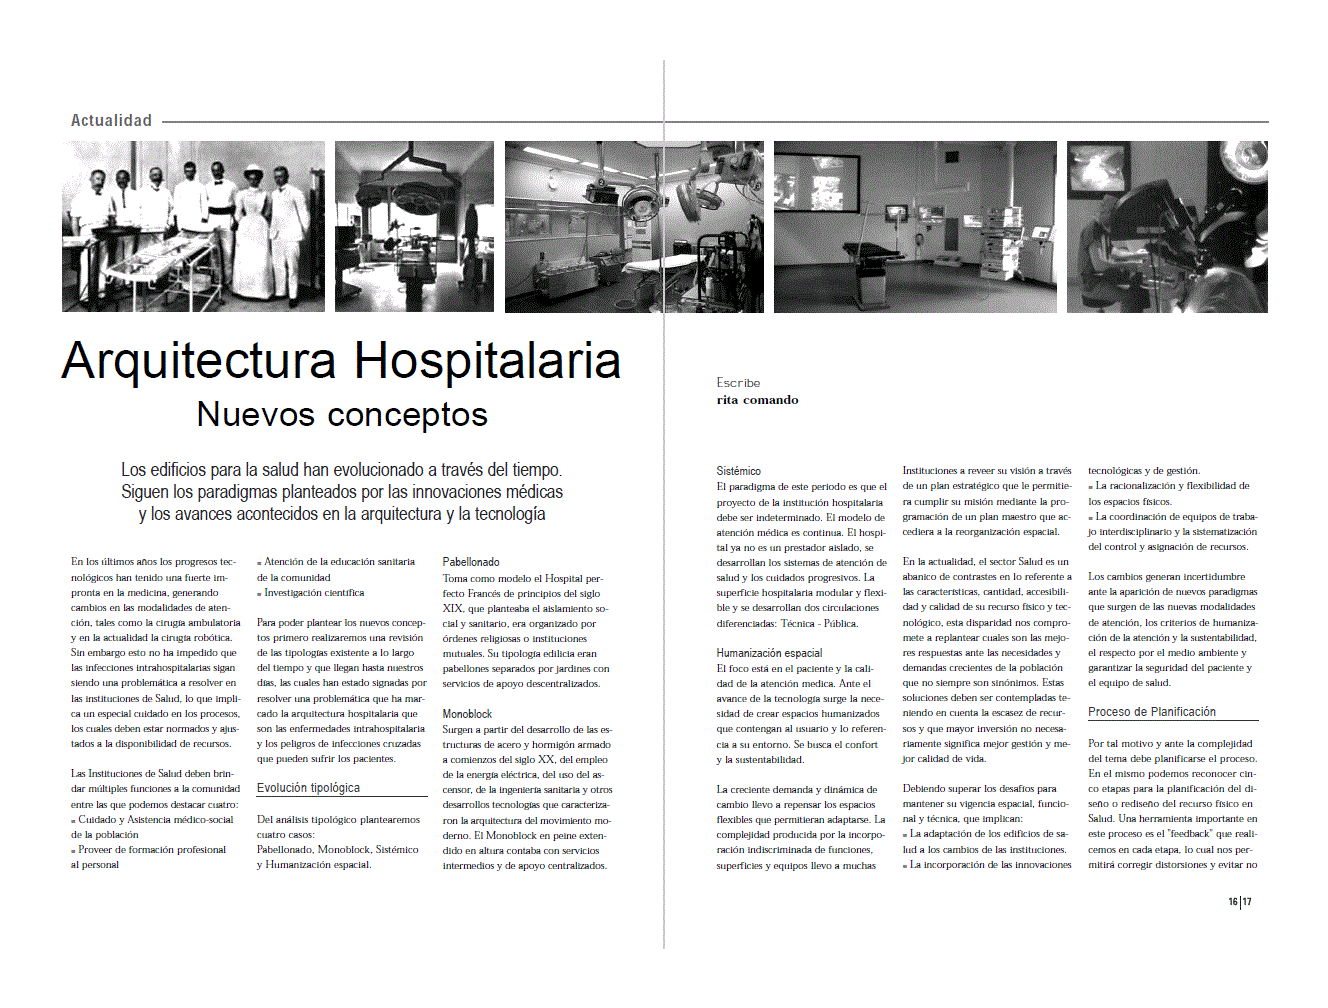 Hôpitaux modernes